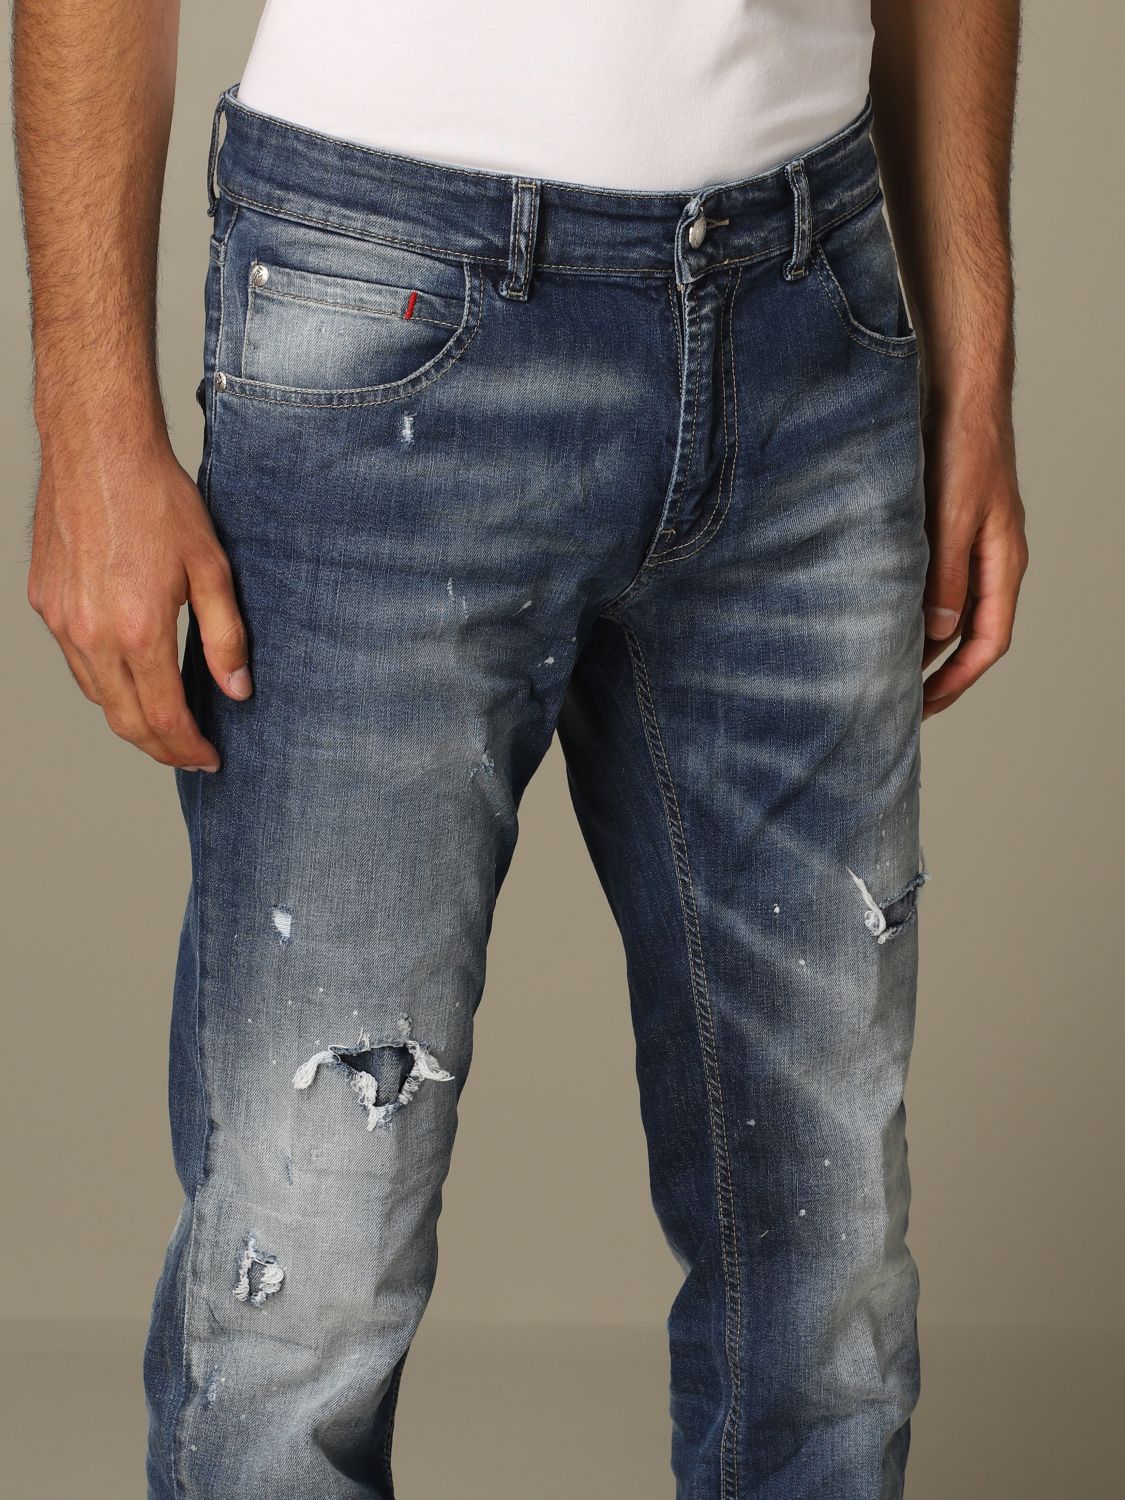 frankie morello jeans price